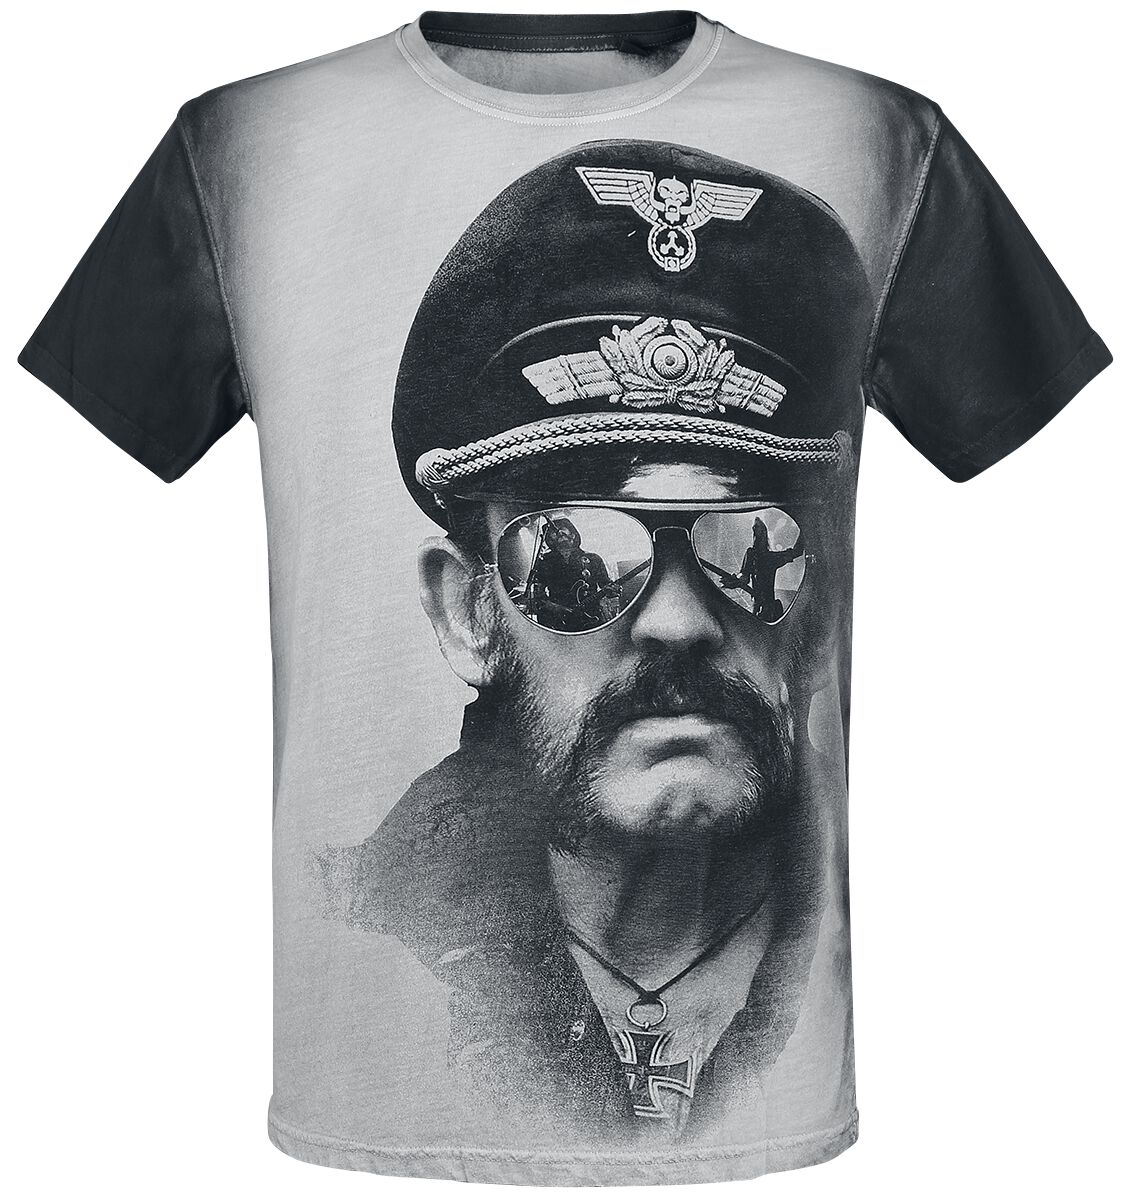 Lemmy T-Shirt - Kilmister Side - S bis XXL - für Männer - Größe L - altweiß/grau  - Lizenziertes Merchandise!